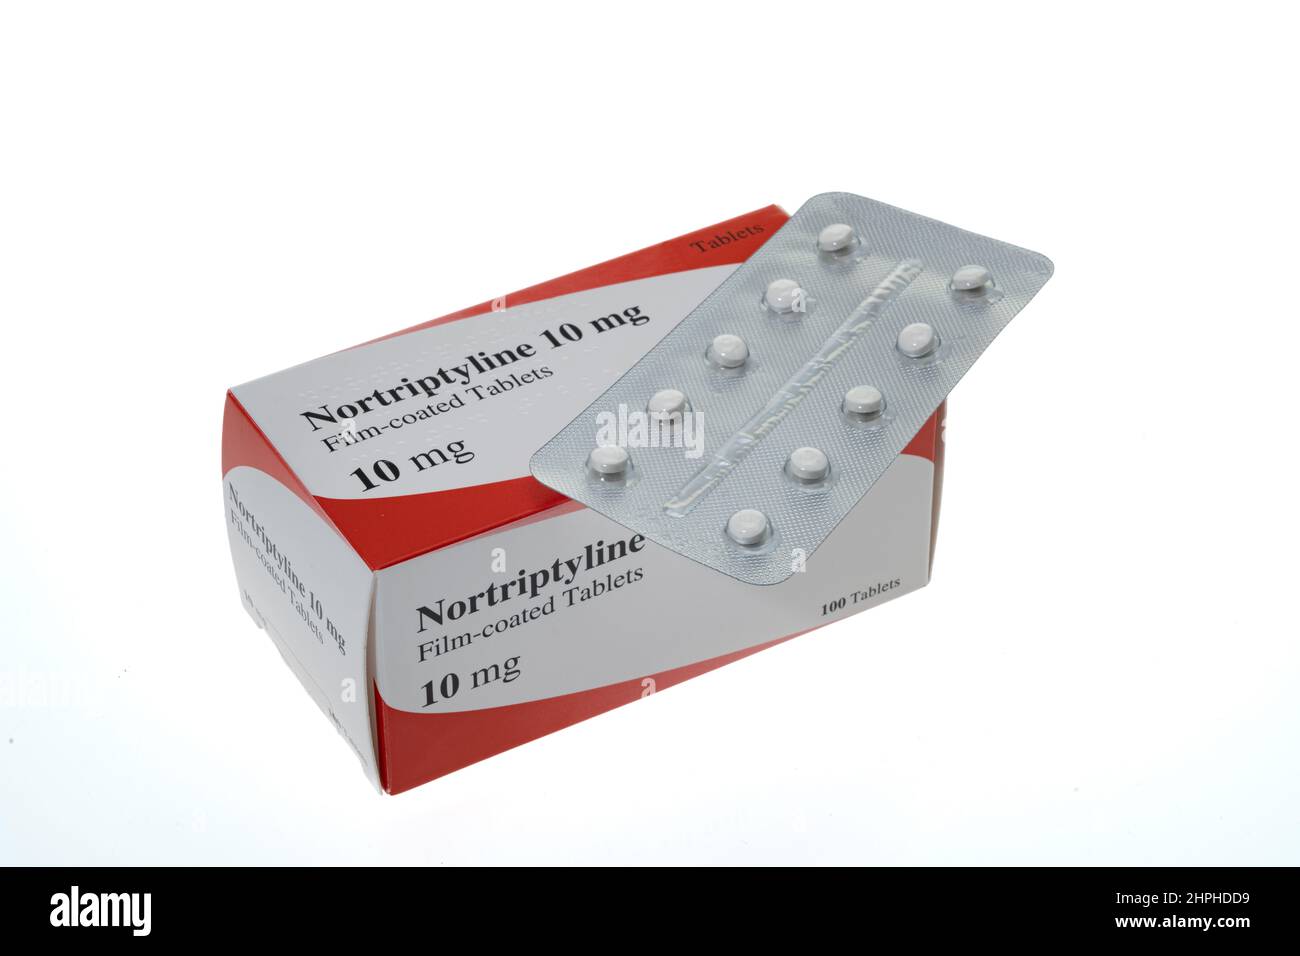 Générique Nortriptyline Hydrochloride comprimés qui sont utilisés pour traiter les symptômes de la dépression et aussi le soulagement de la douleur - fond blanc Banque D'Images